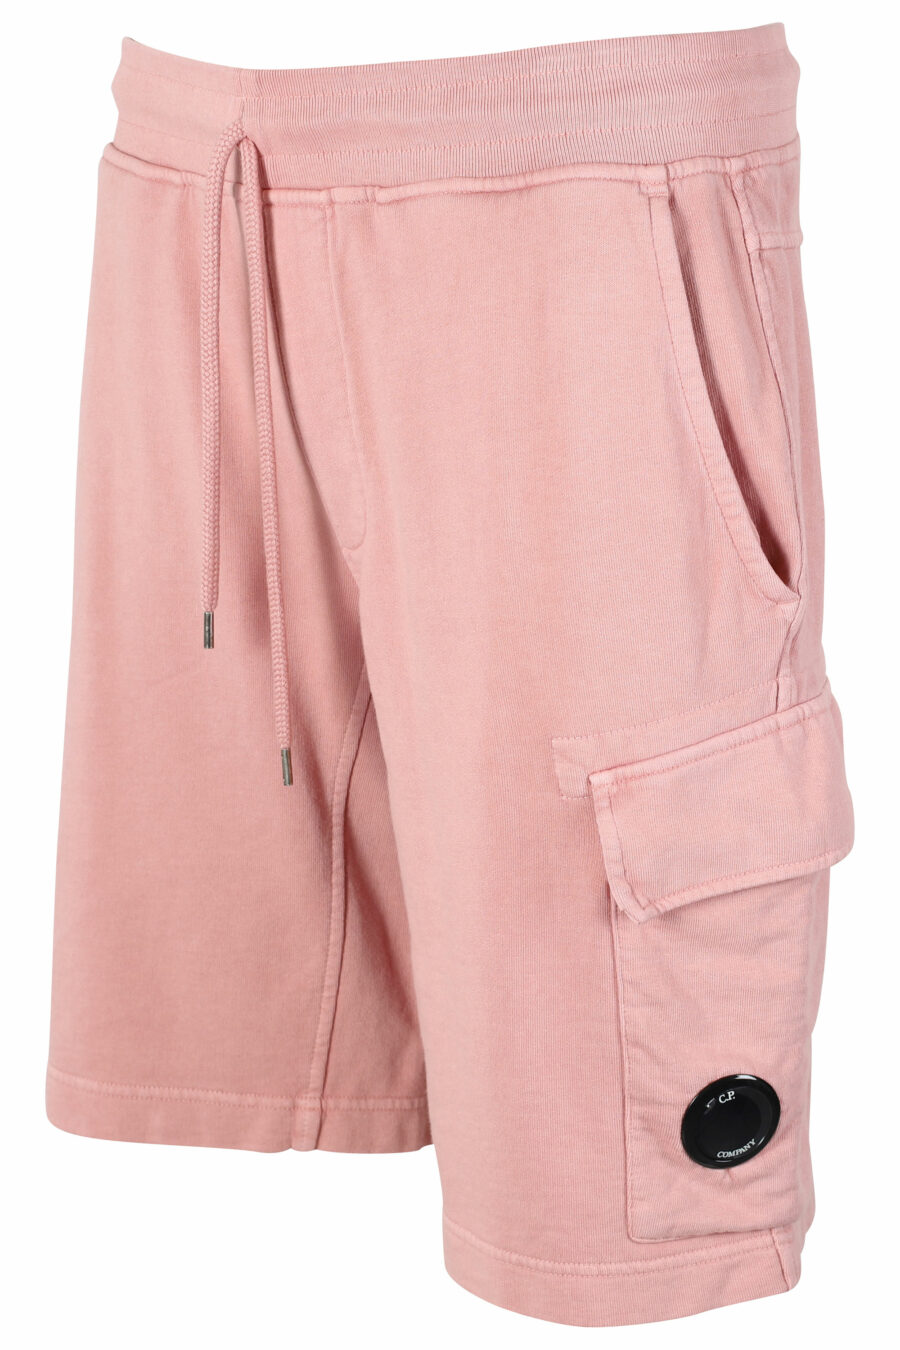 Pantalón de chándal corto rosa estilo cargo con minilogo circular - IMG 9518